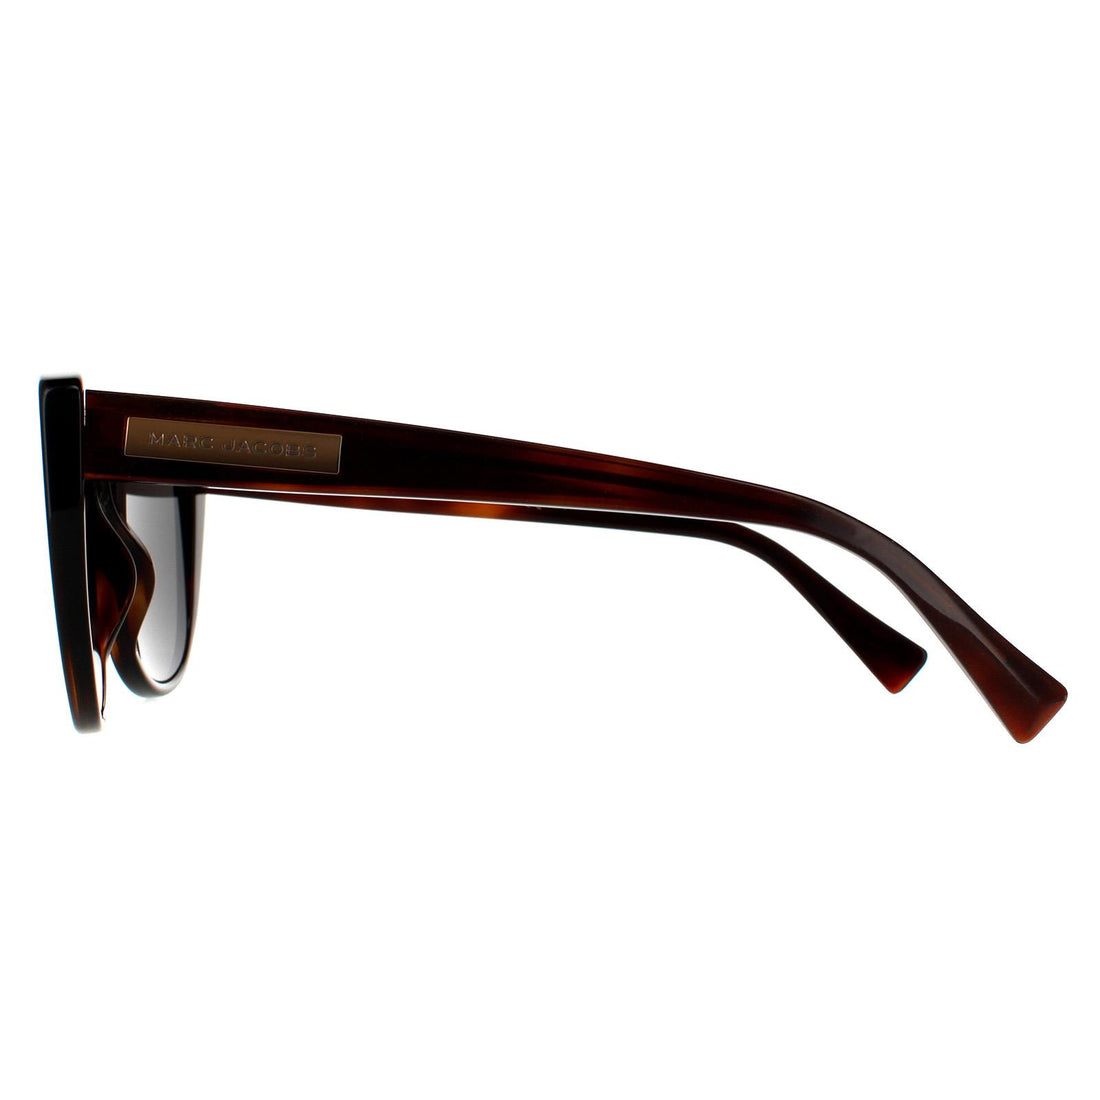 Marc Jacobs MARC 421/S Sunglasses